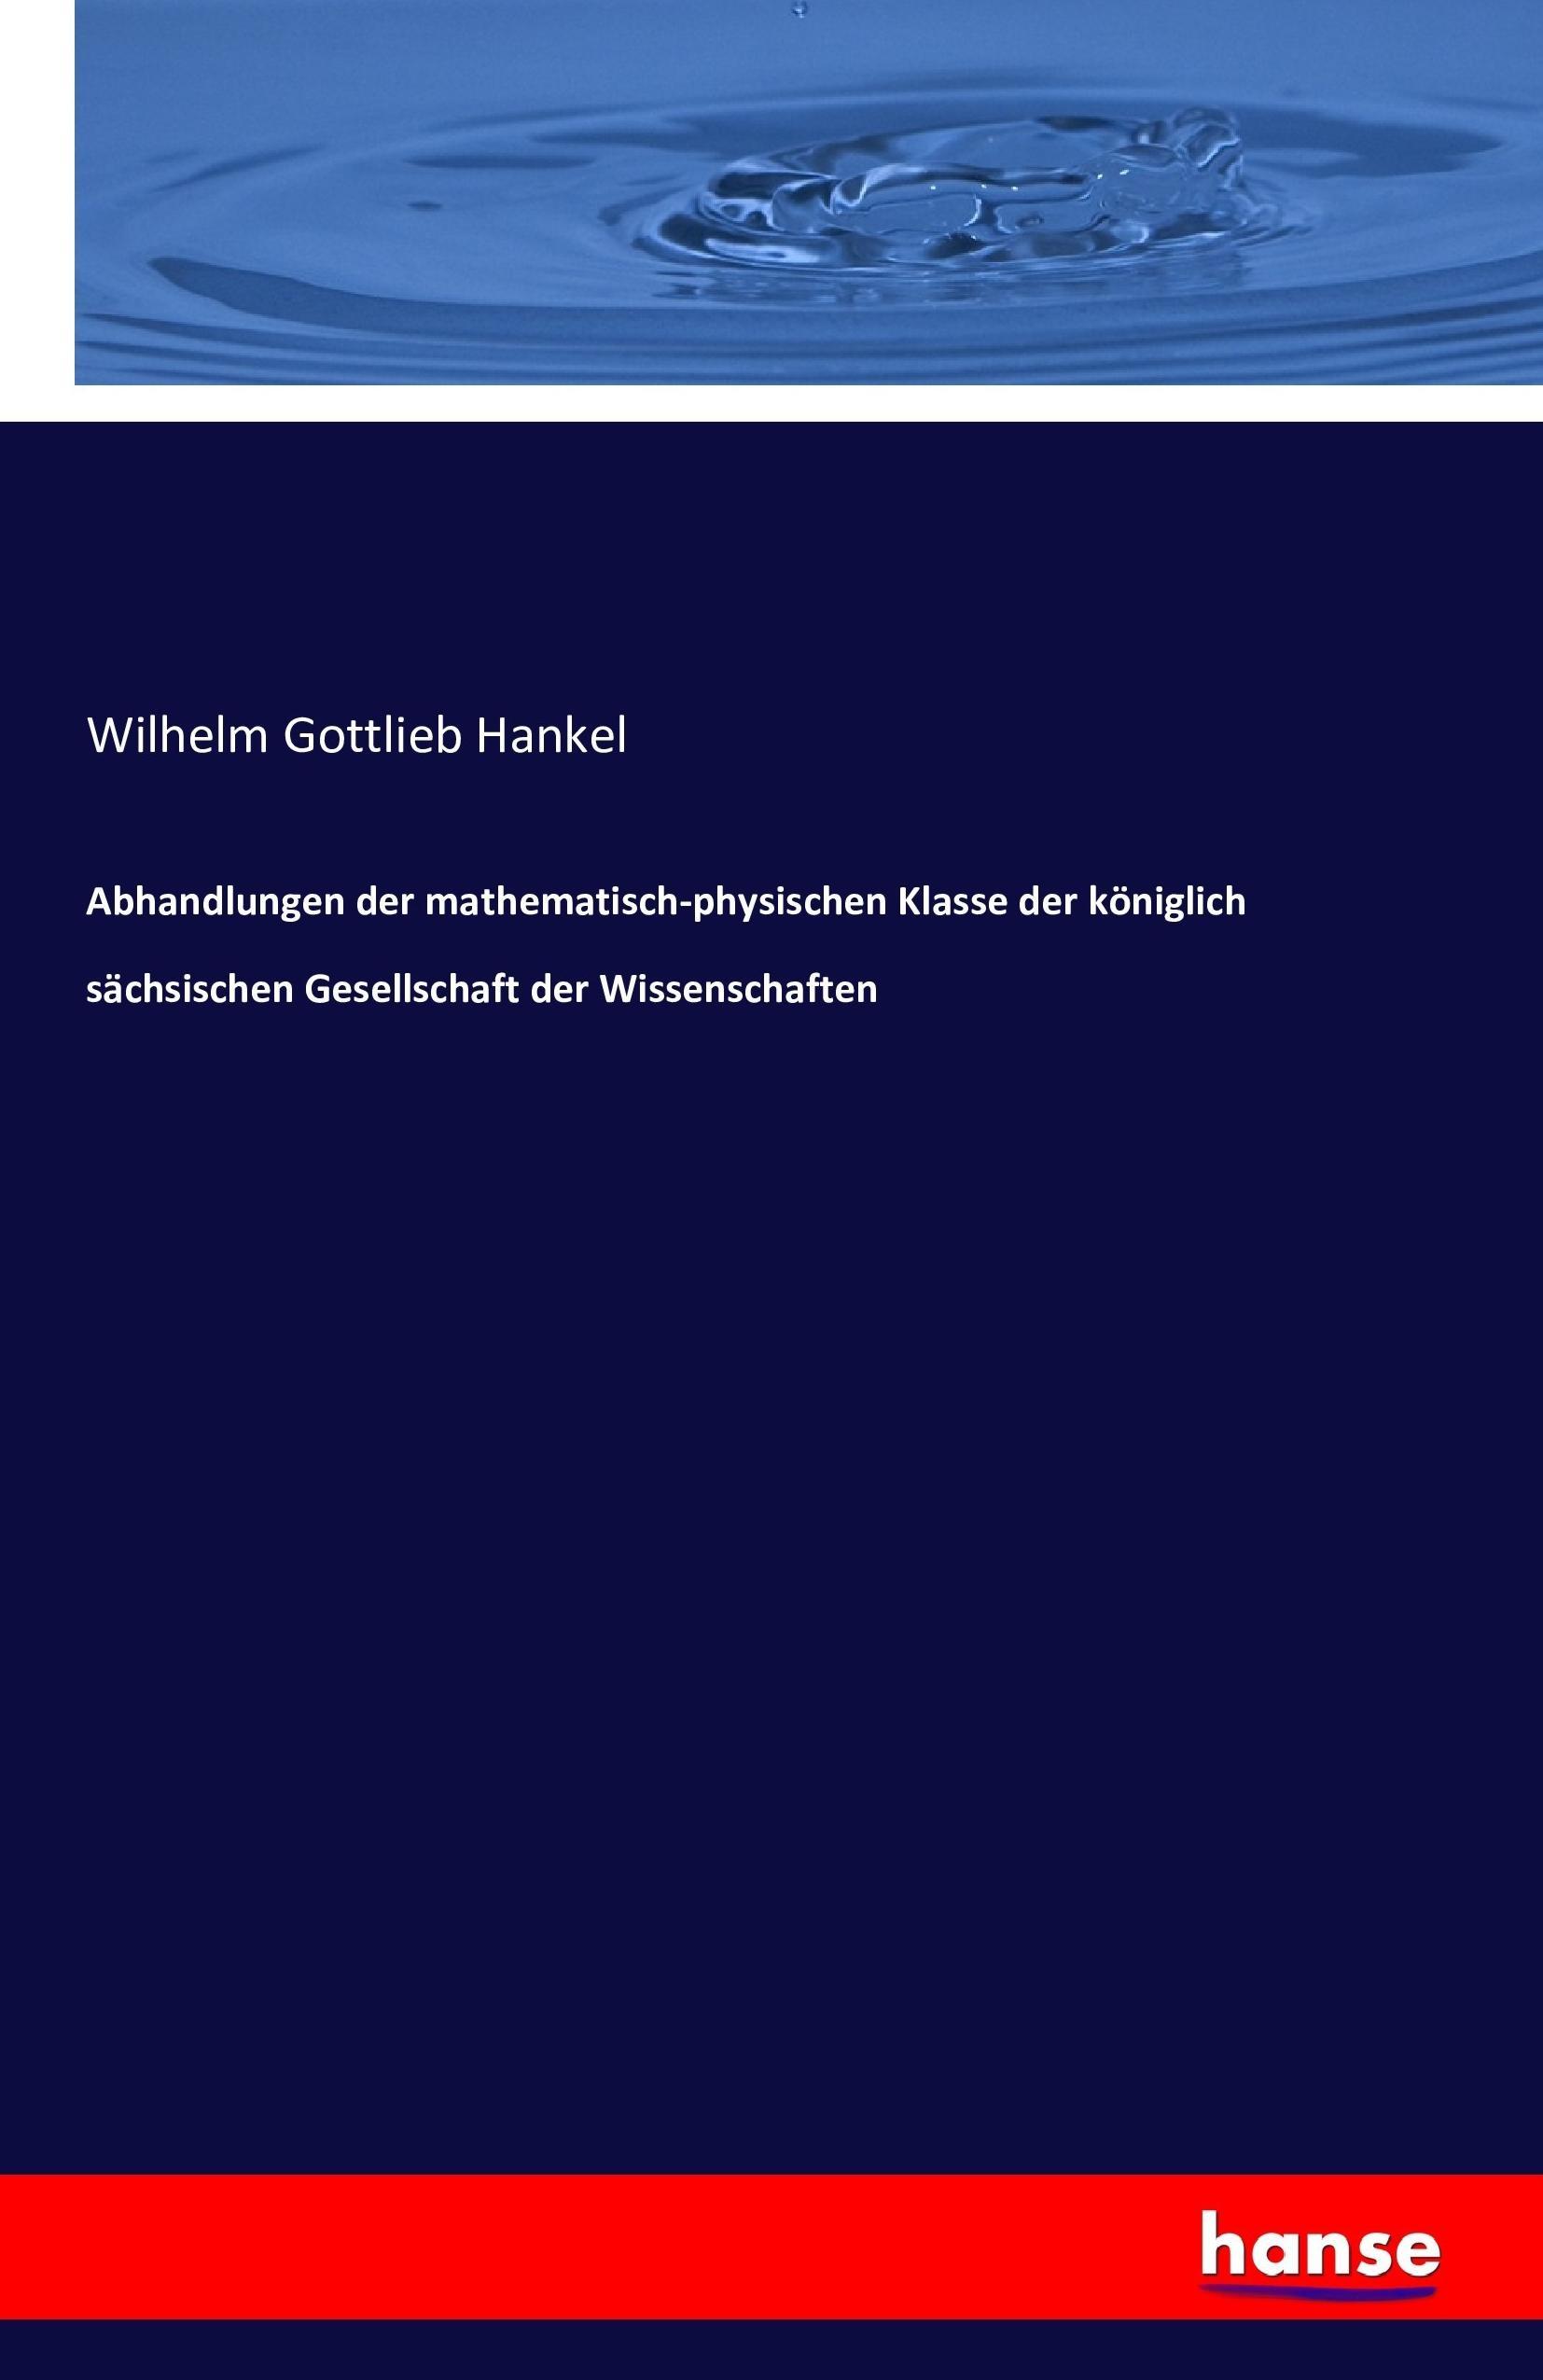 Abhandlungen der mathematisch-physischen Klasse der koeniglich saechsischen Gesellschaft der Wissenschaften - Hankel, Wilhelm Gottlieb